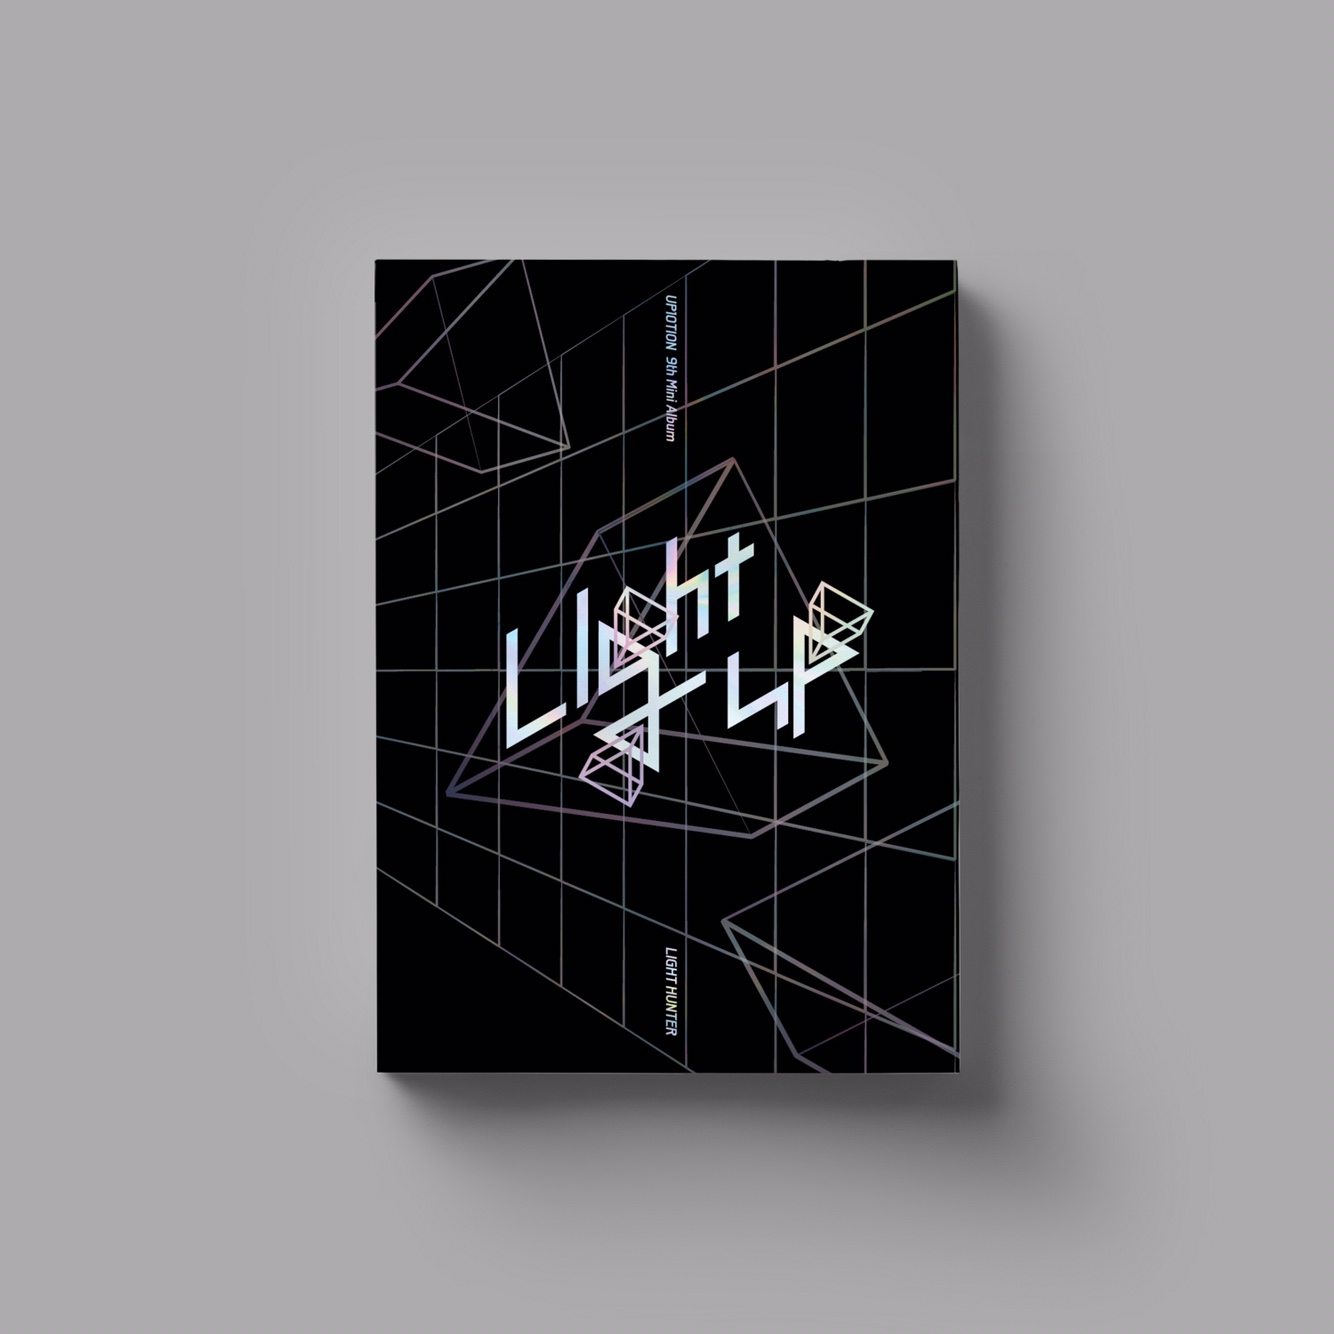 업텐션 - 미니앨범 9집 [Light UP] (LIGHT HUNTER Ver.)케이팝스토어(kpop store)